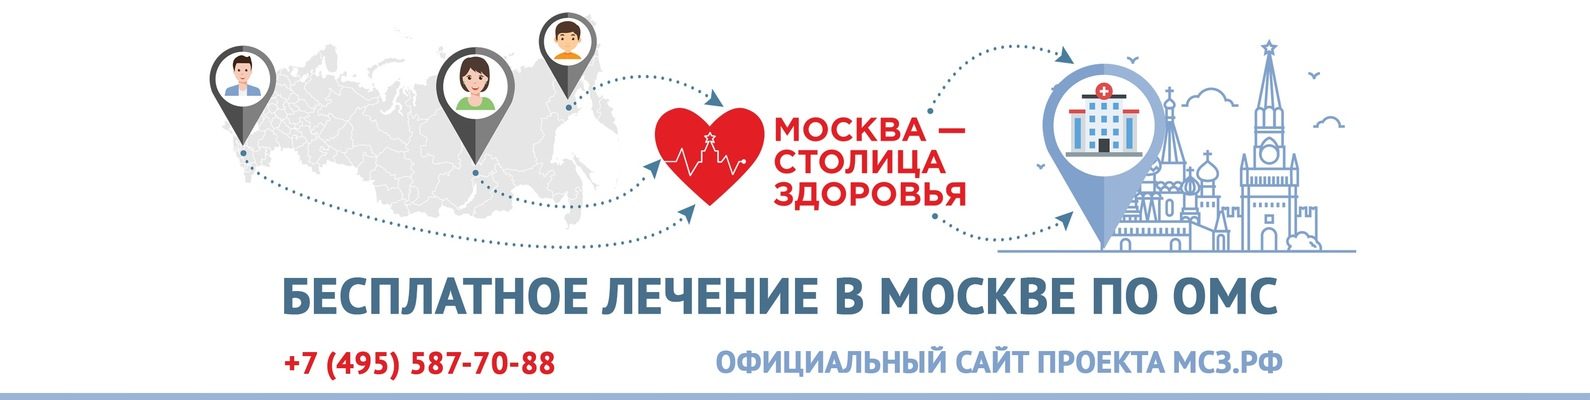 Москва - столица здоровья!